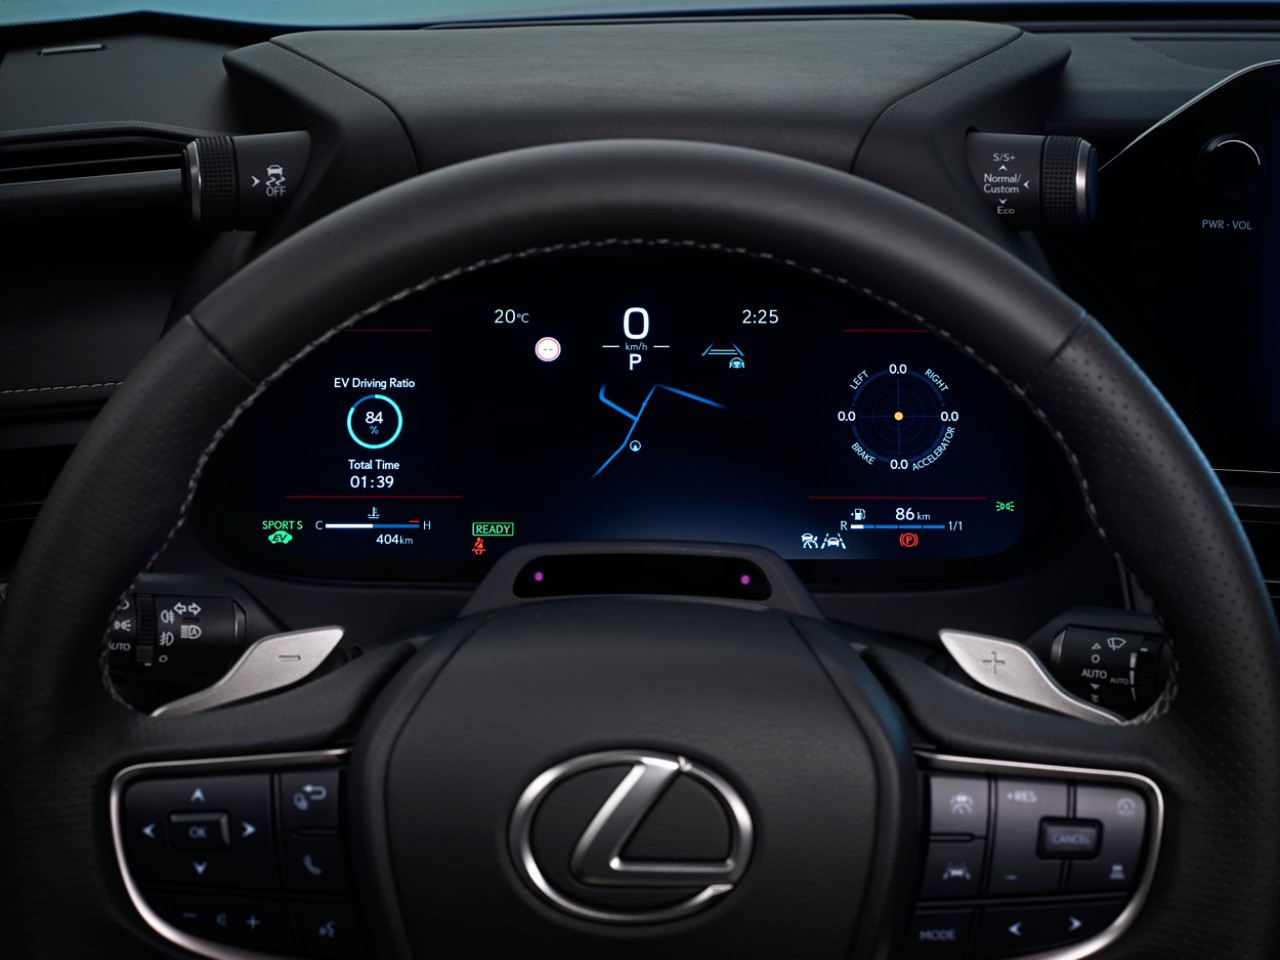 The Lexus UX steering wheel